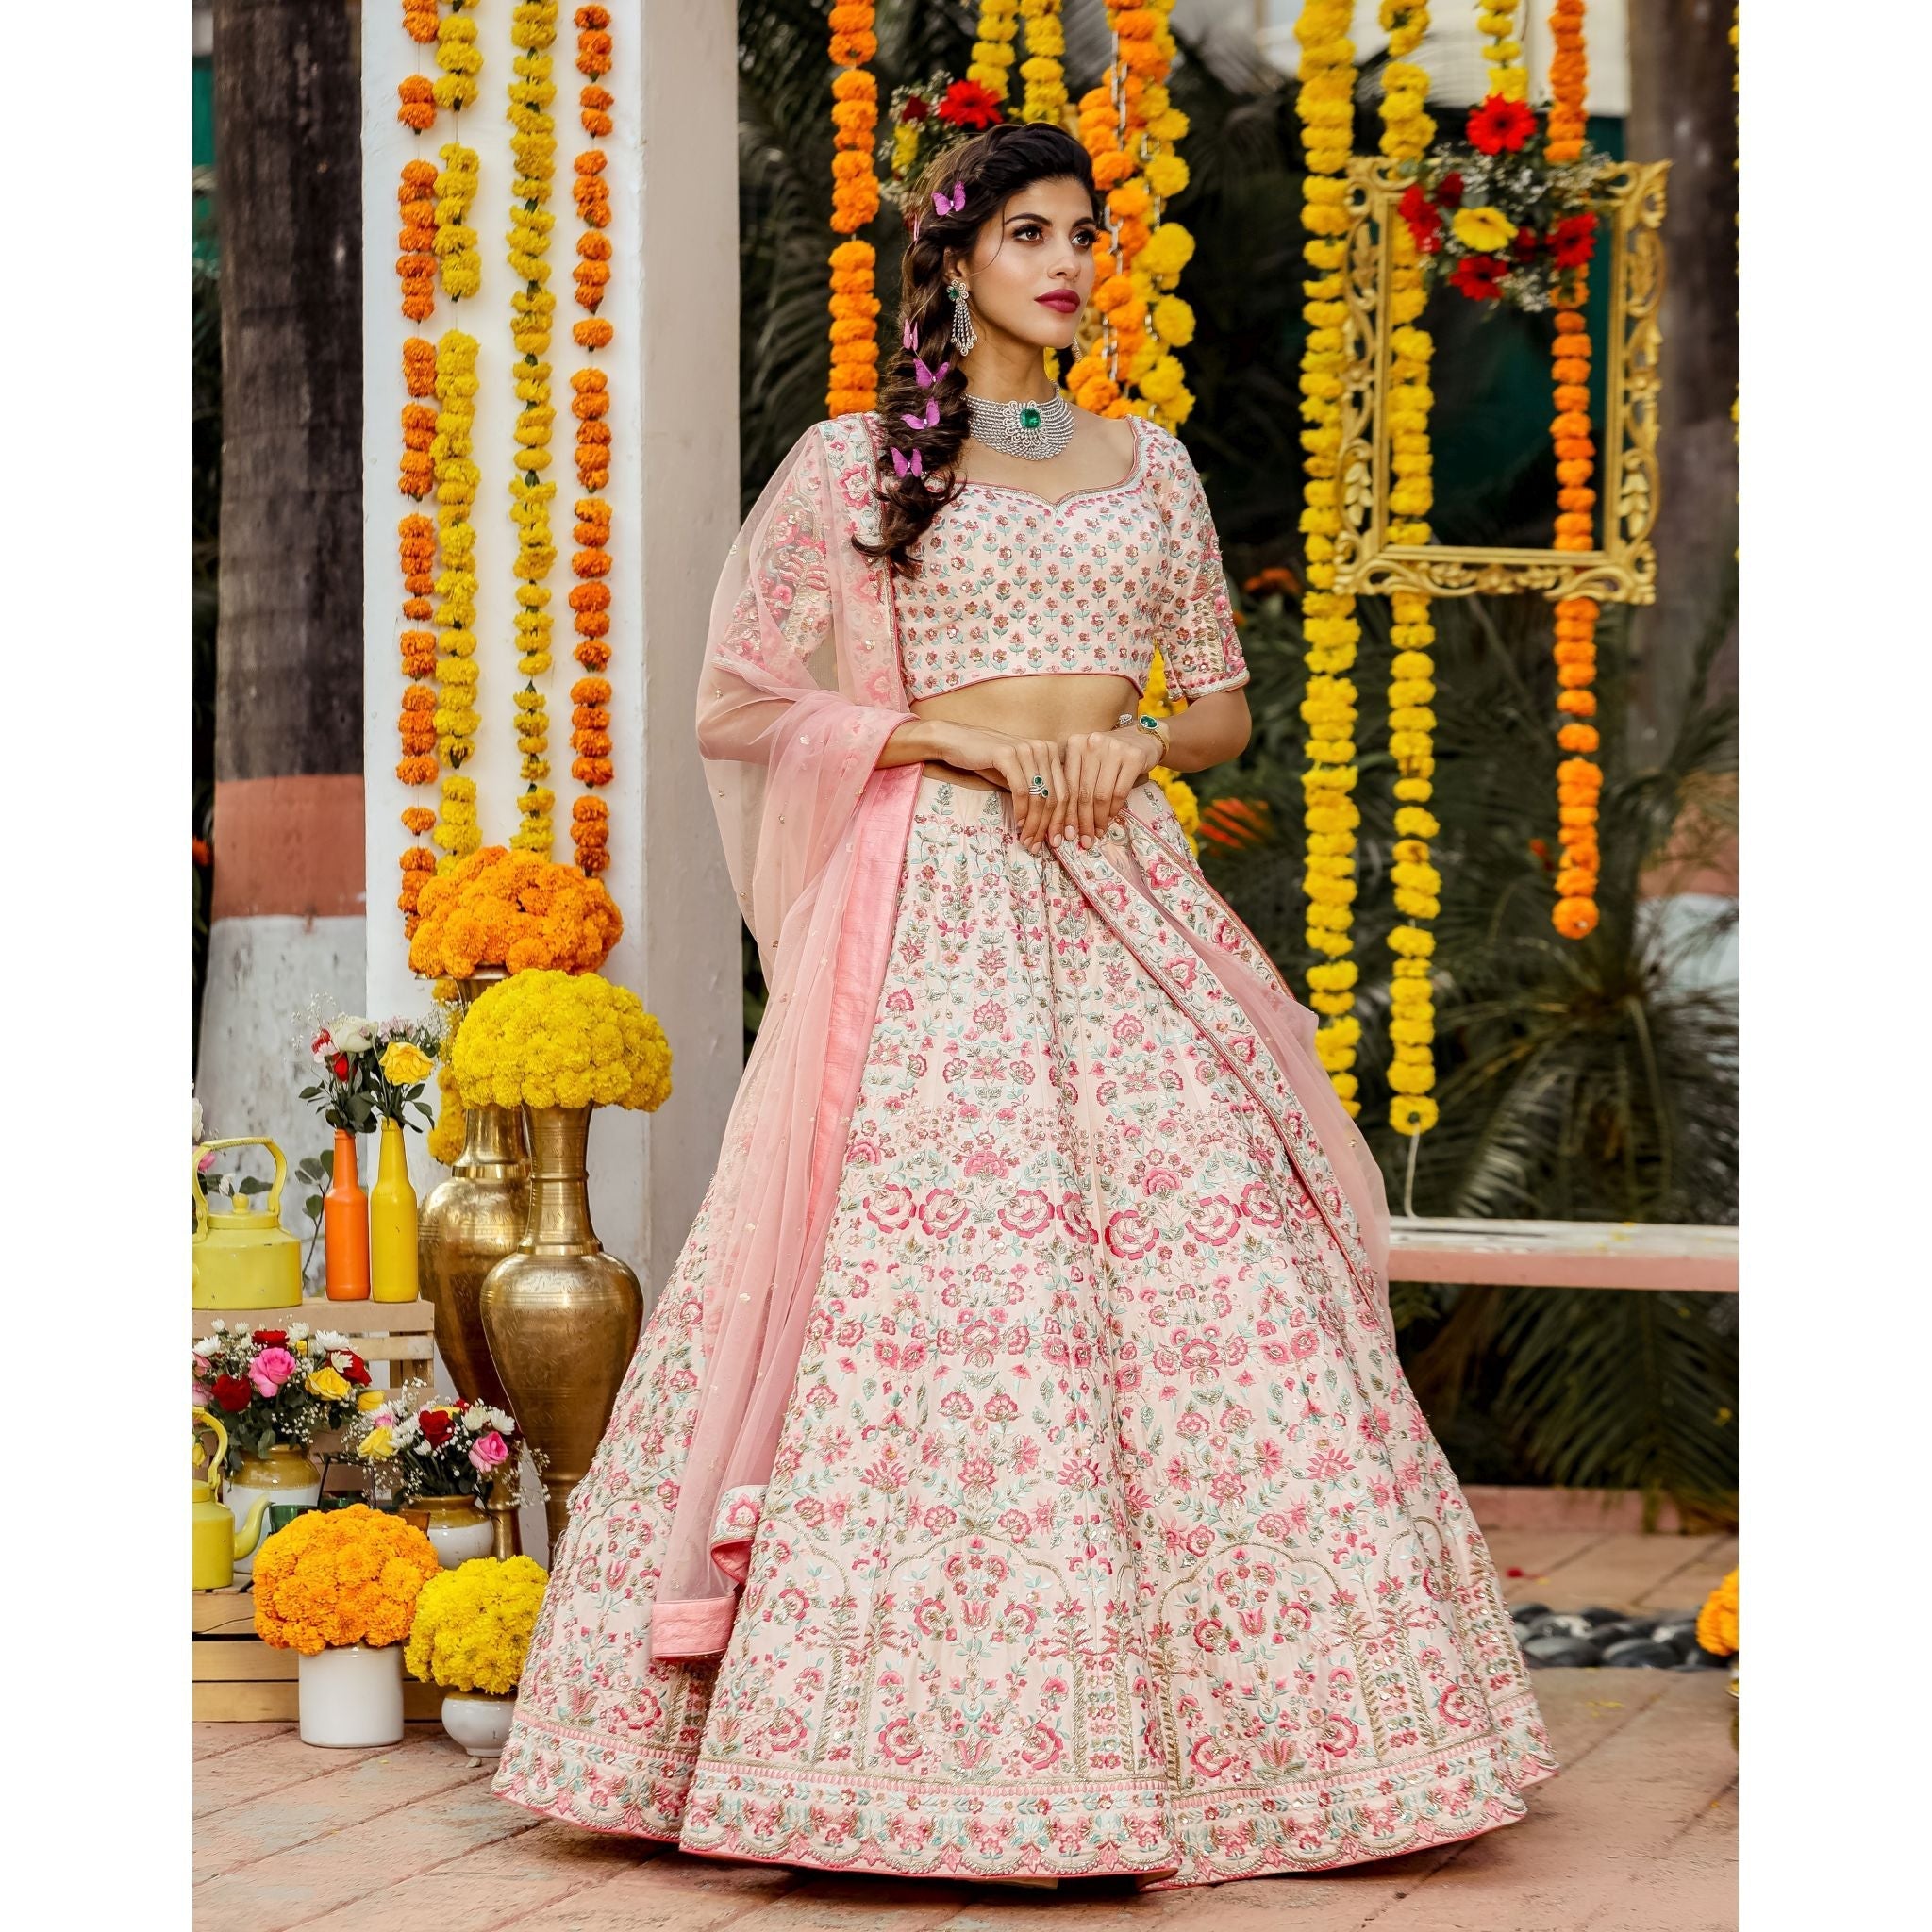 Net embellished designer Lehenga | Bridal Wedding Outfit